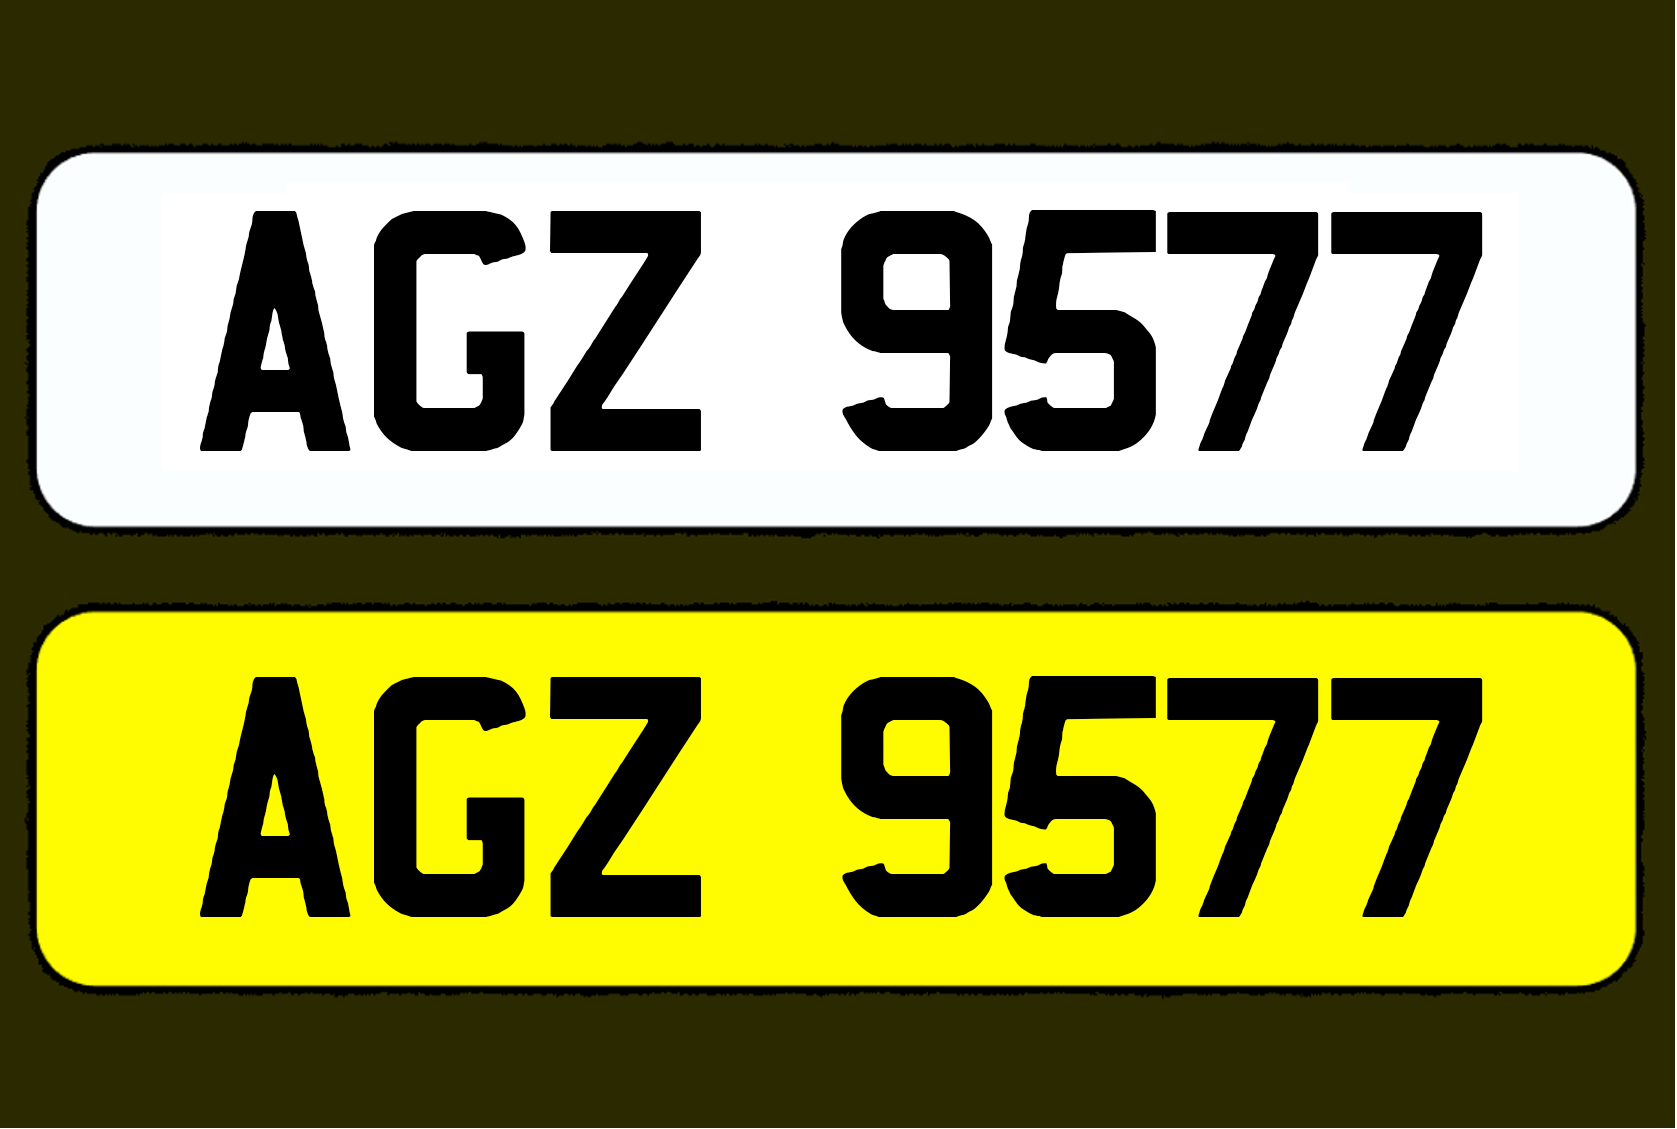 AGZ 9577